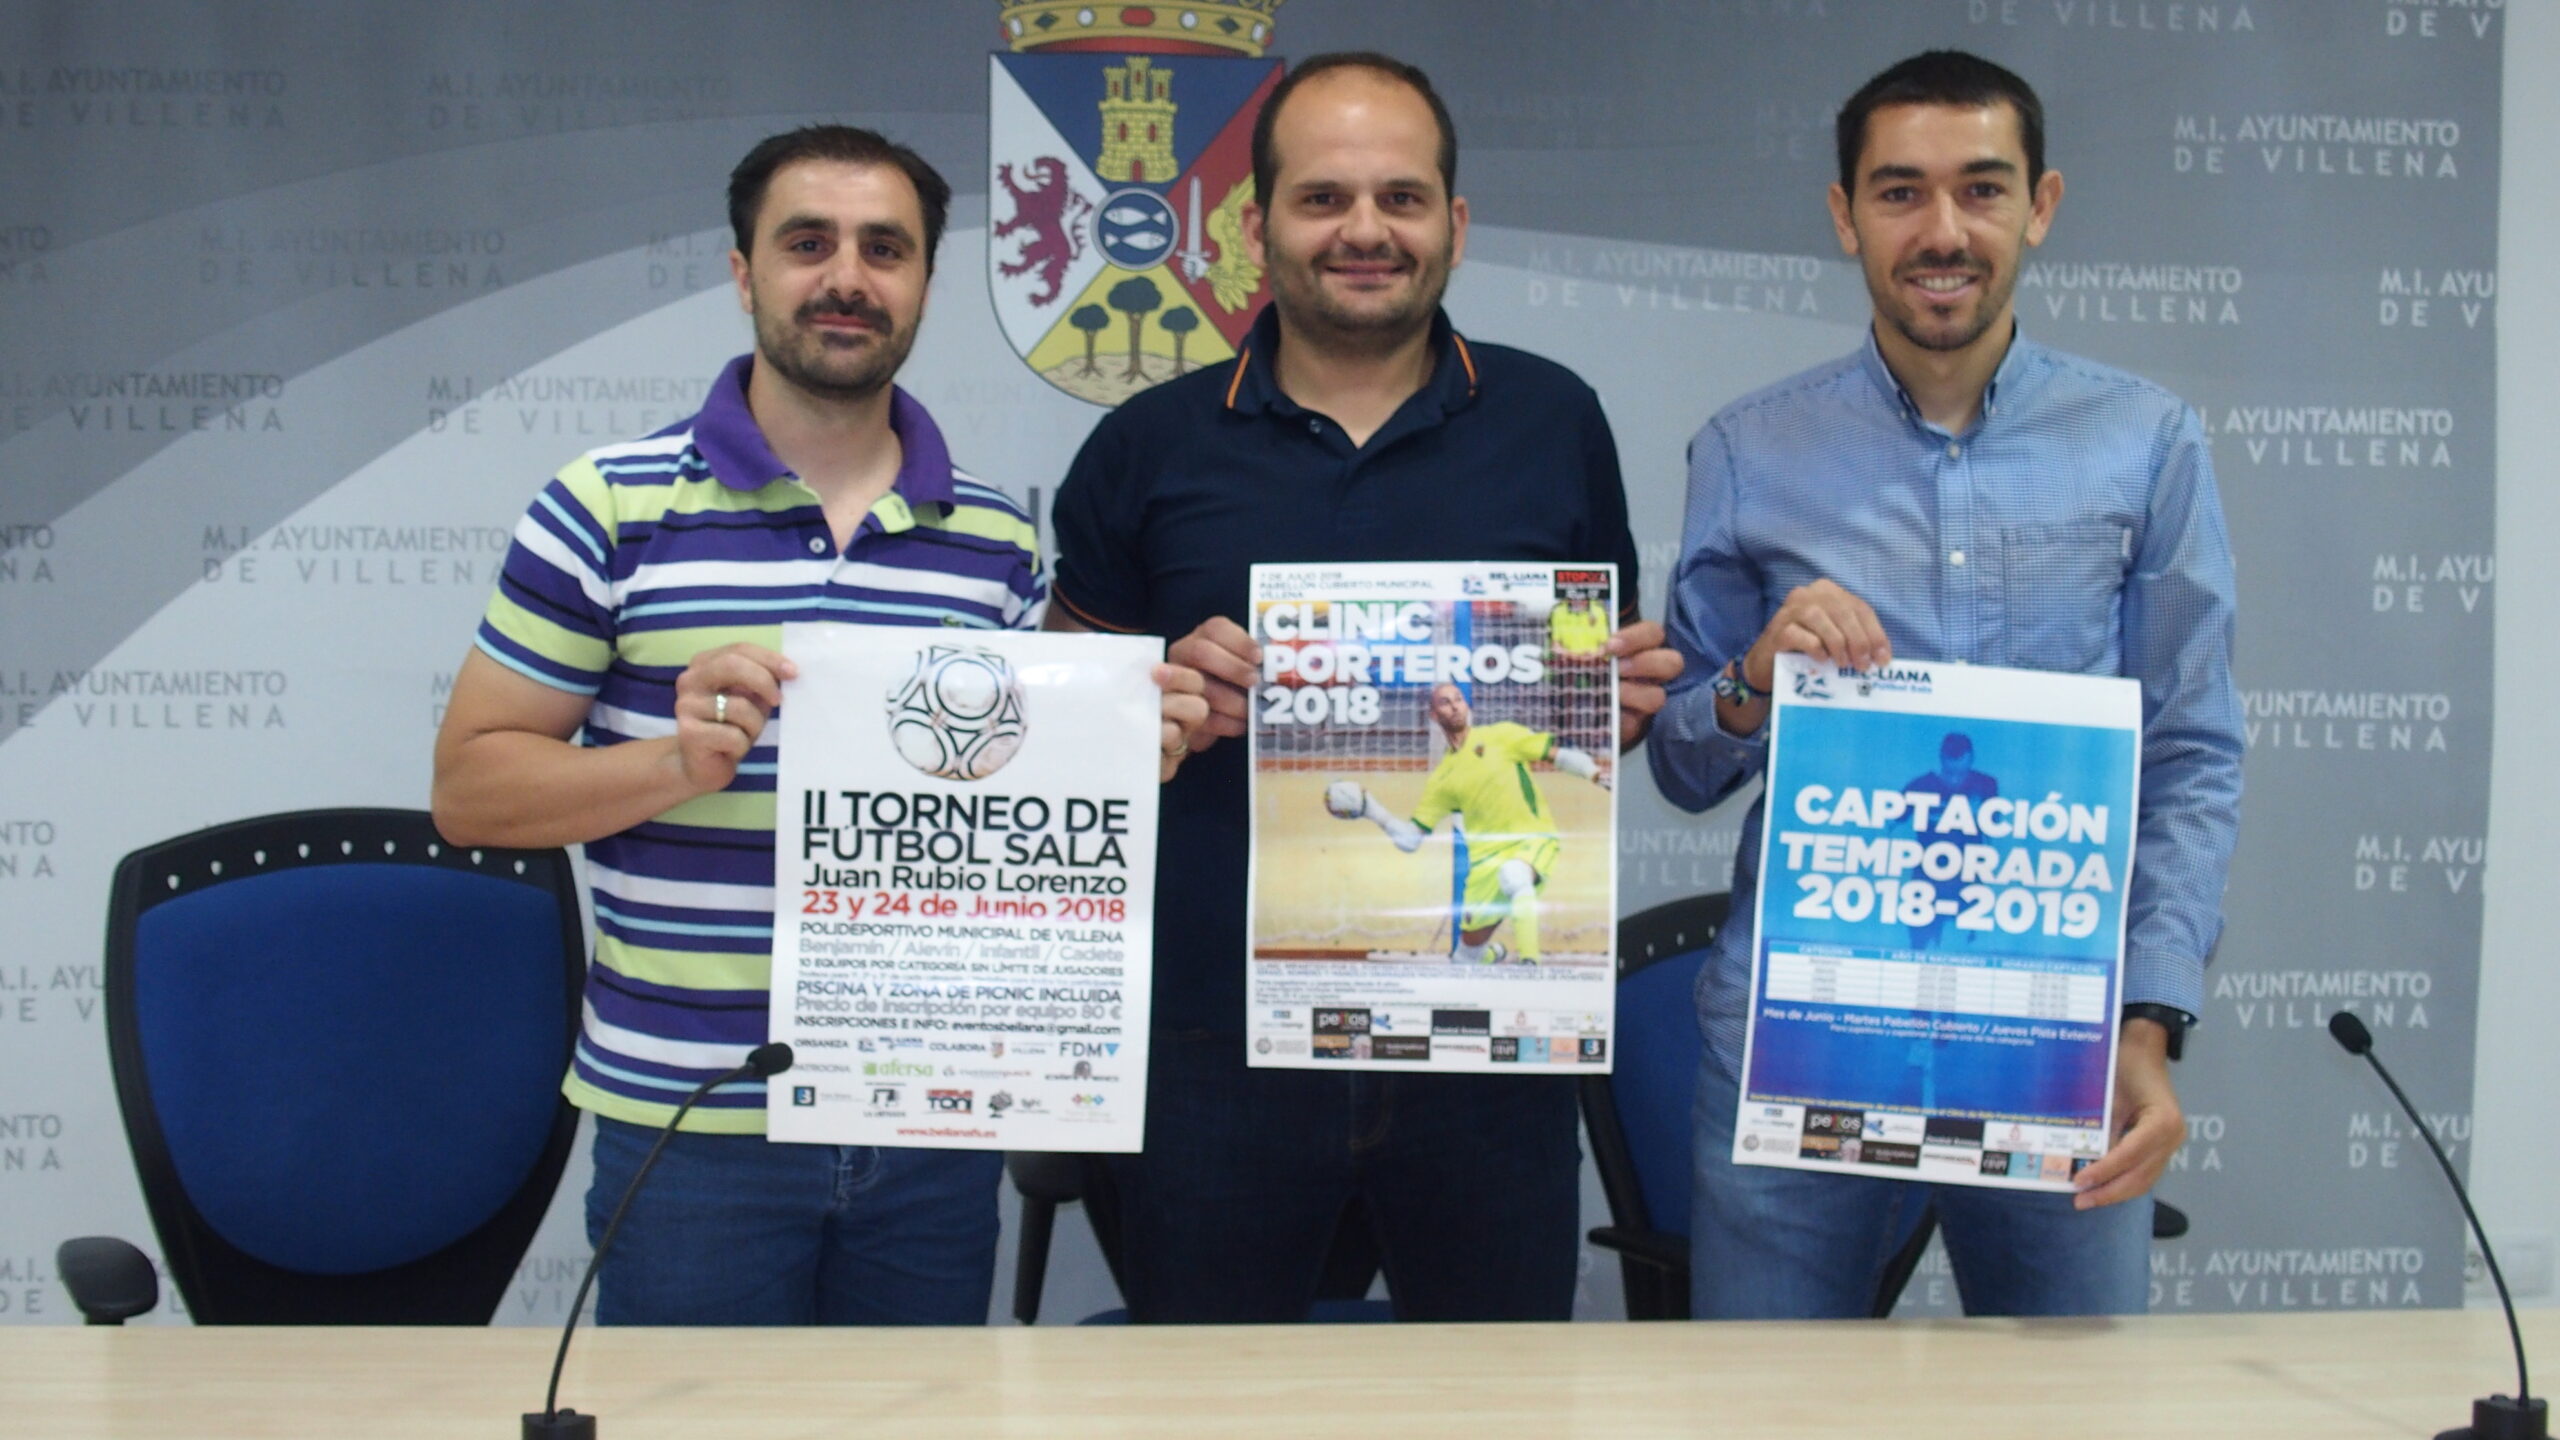 Este fin de semana se celebra el torneo junior de fútbol sala Juan Rubio en el Polideportivo Municipal